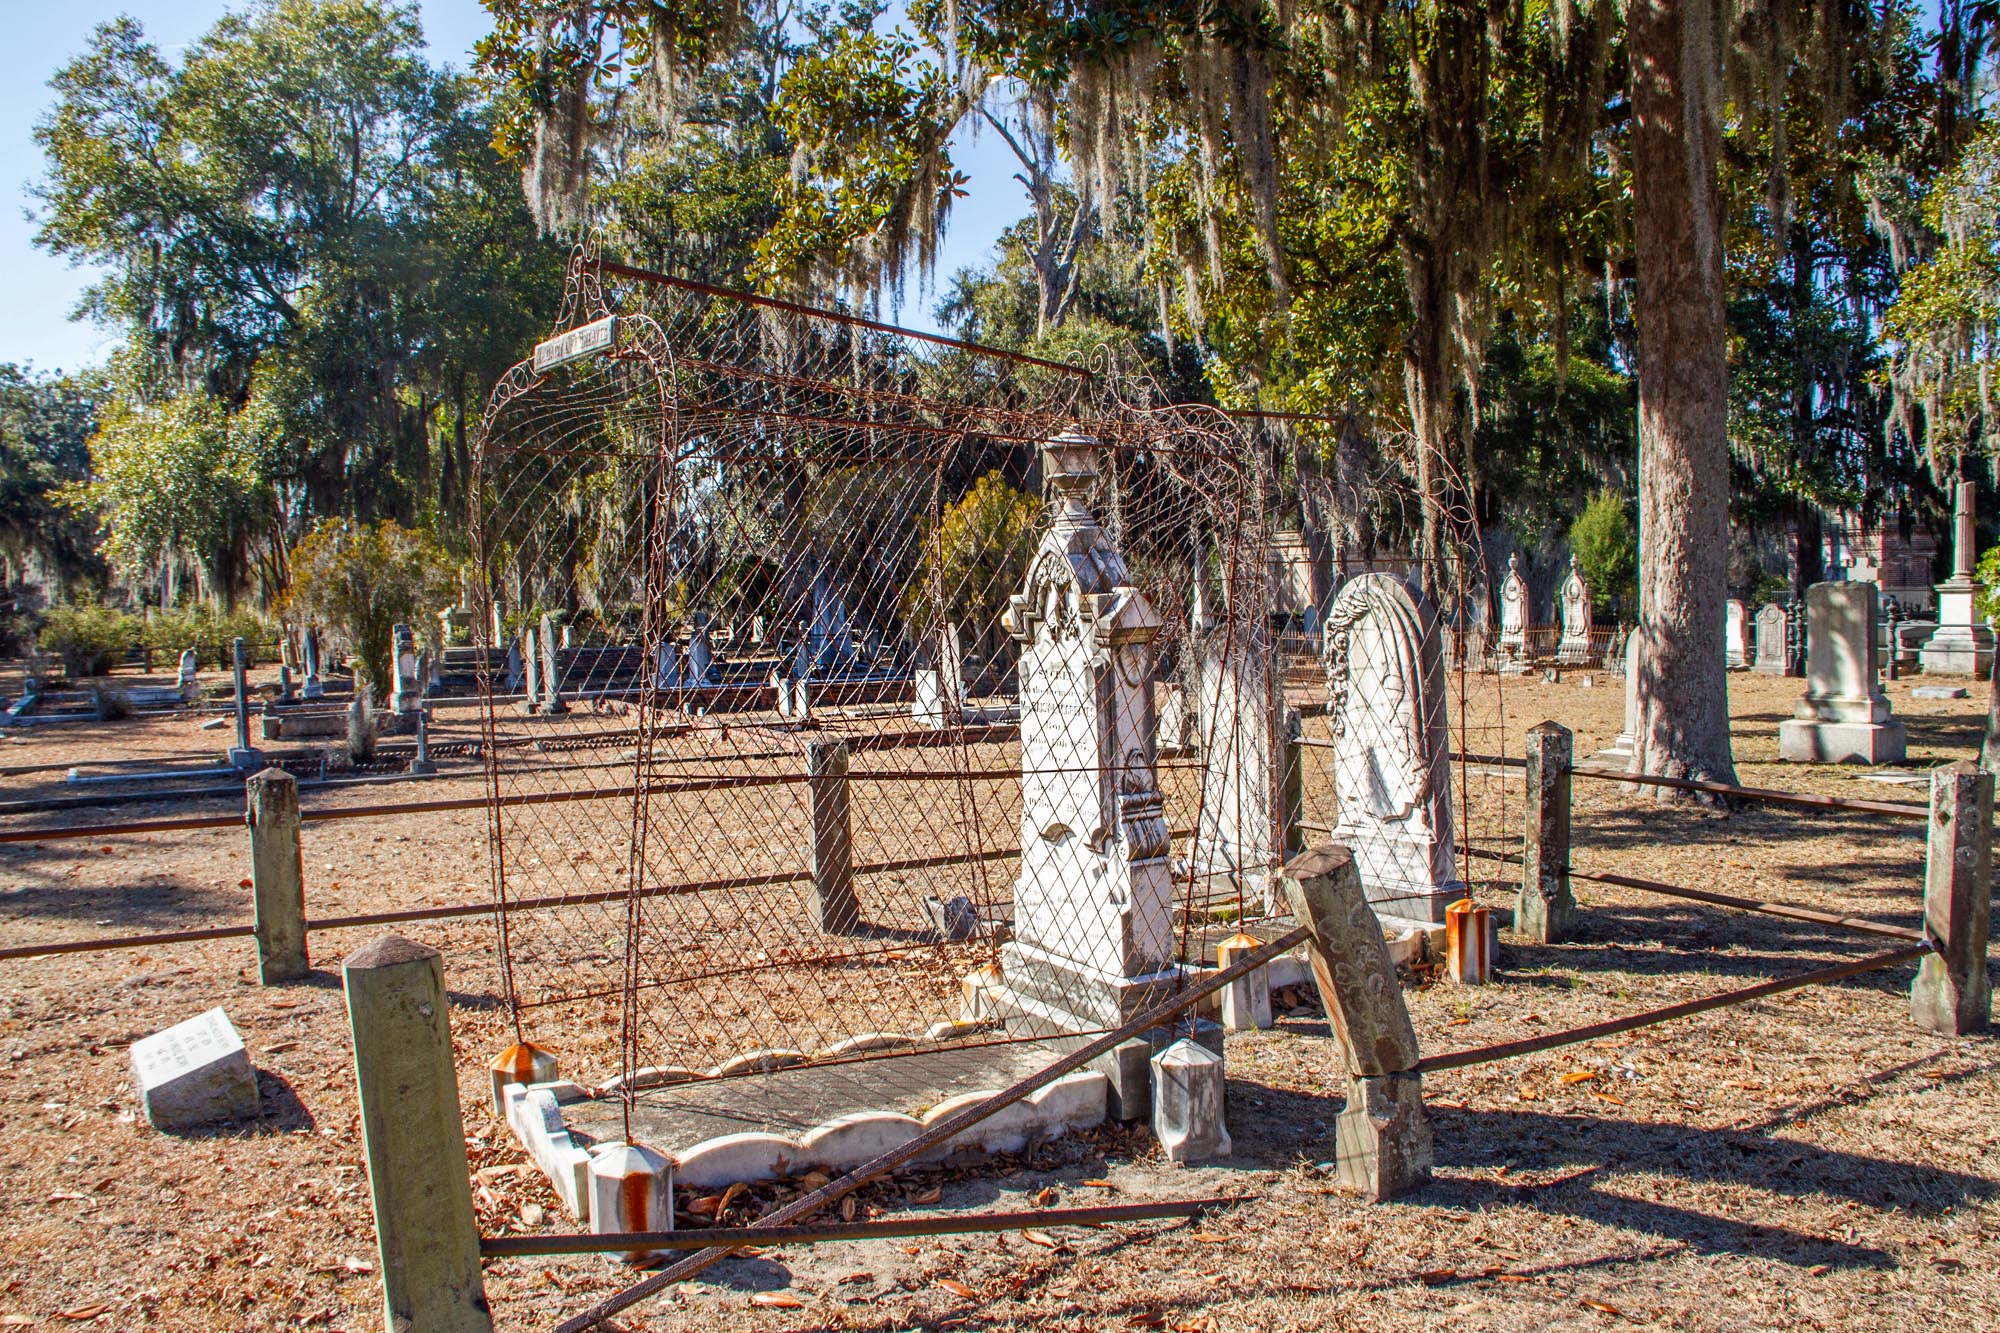 Strange grave in Savannah